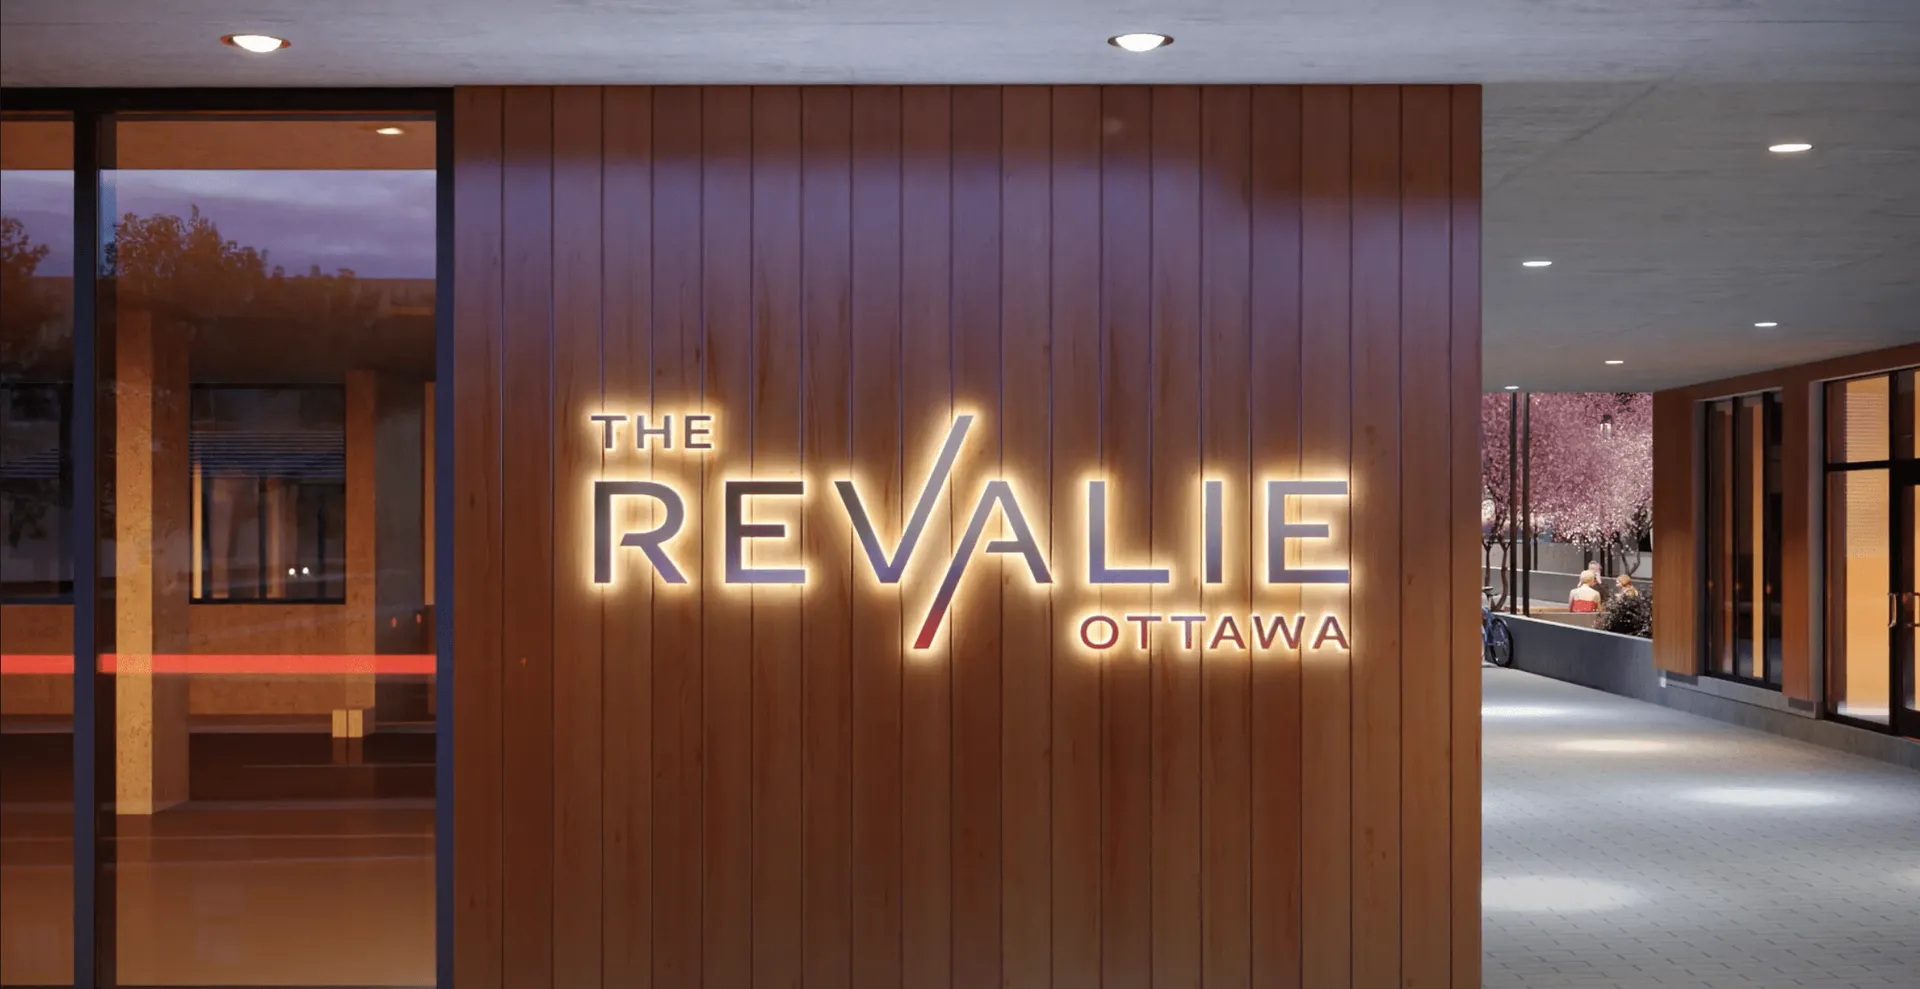 The Revalie Ottawa 1